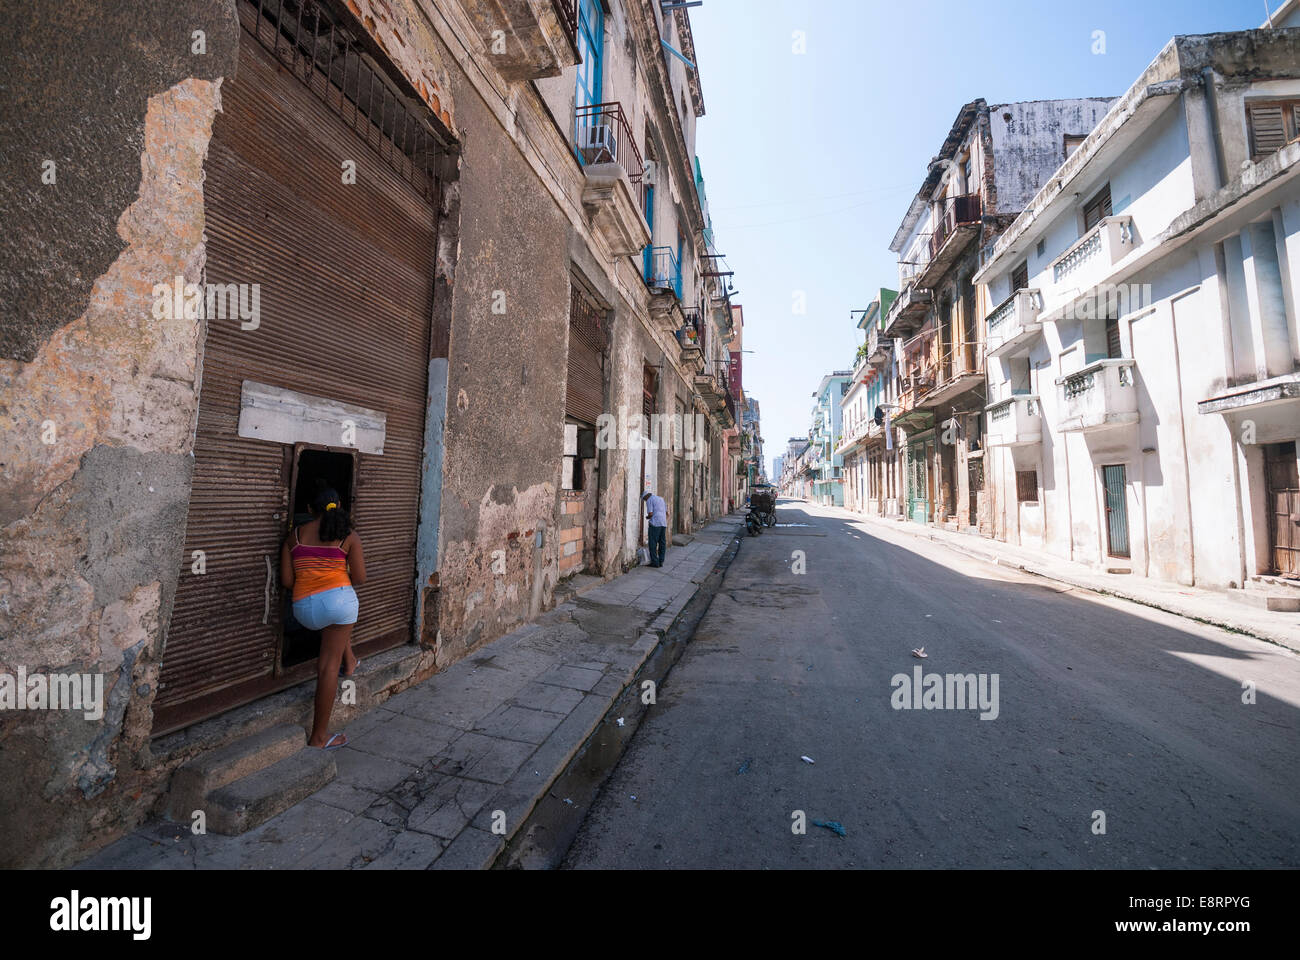 A Cuban woman talks to a friend through an open doorway in a Central Havana neighborhood. Stock Photo